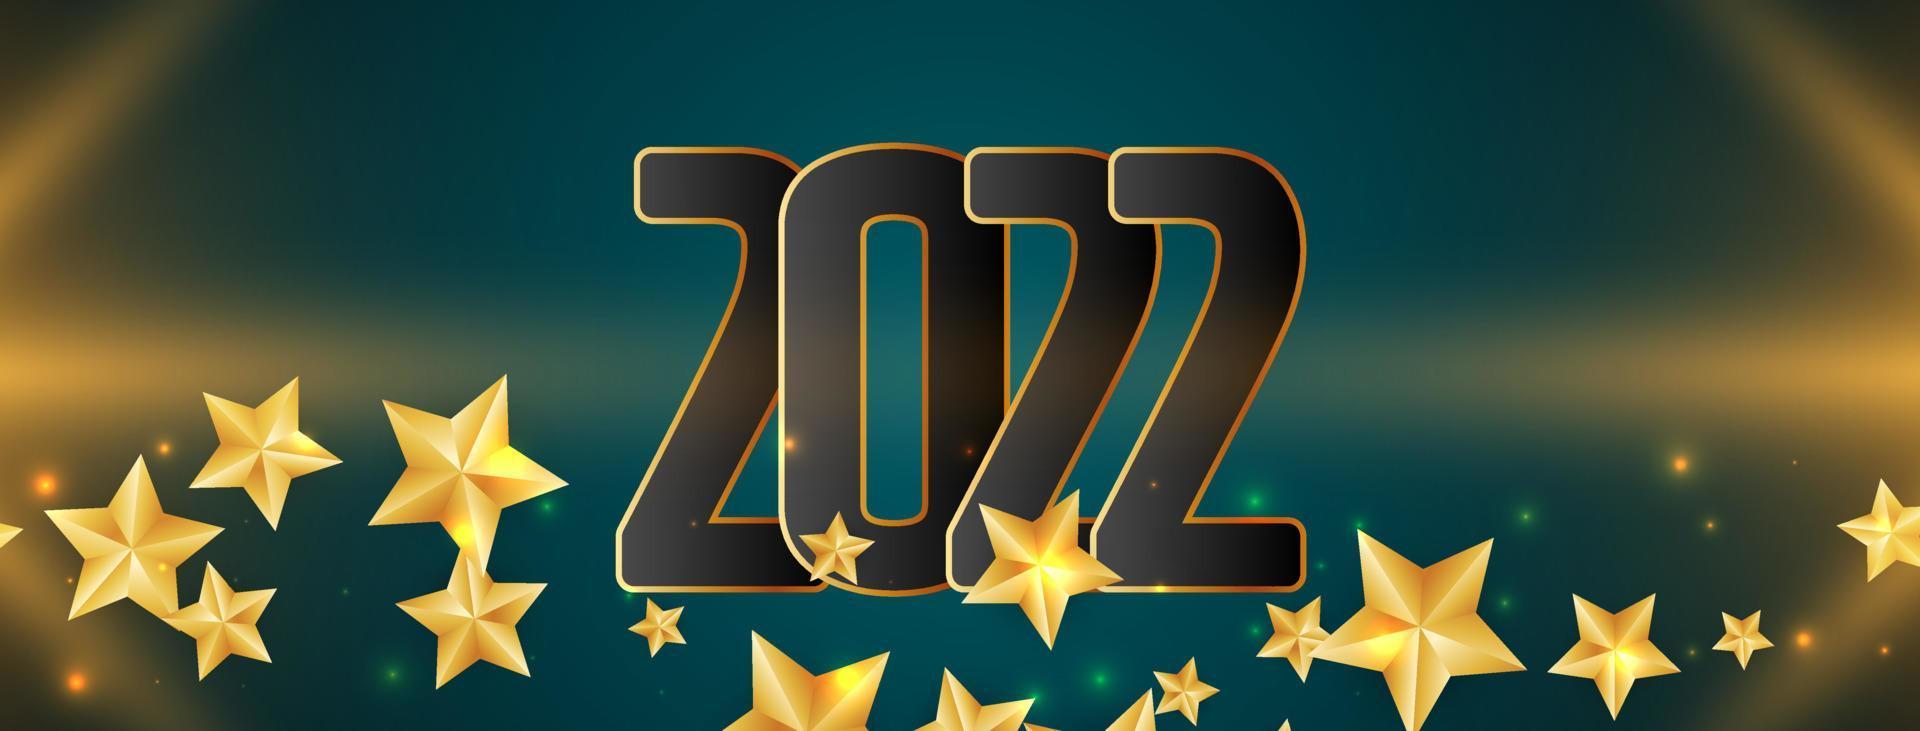 gloeiend gelukkig nieuwjaar 2022 sterren bannerontwerp vector